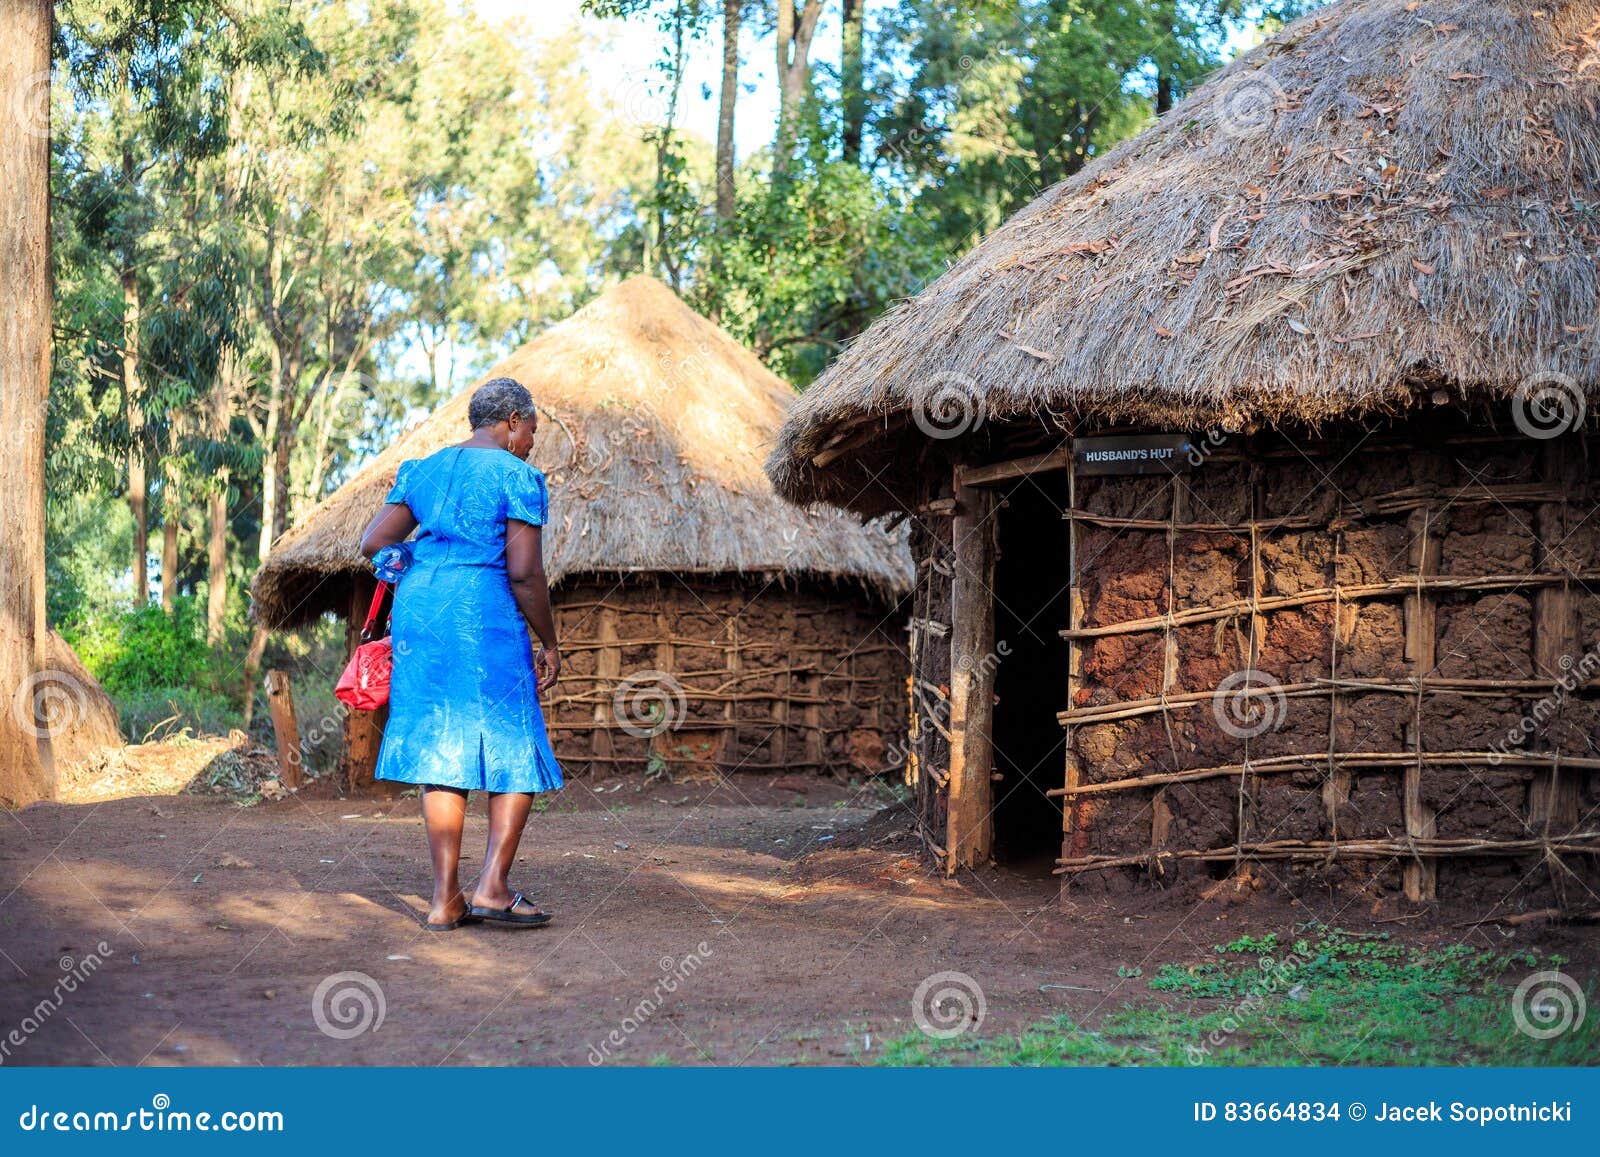 非洲小屋 库存图片. 图片 包括有 玉米棒, 贫穷, 布琼布拉, 居住, 房子, 土块, 棚子, 天空, 自然 - 3643673